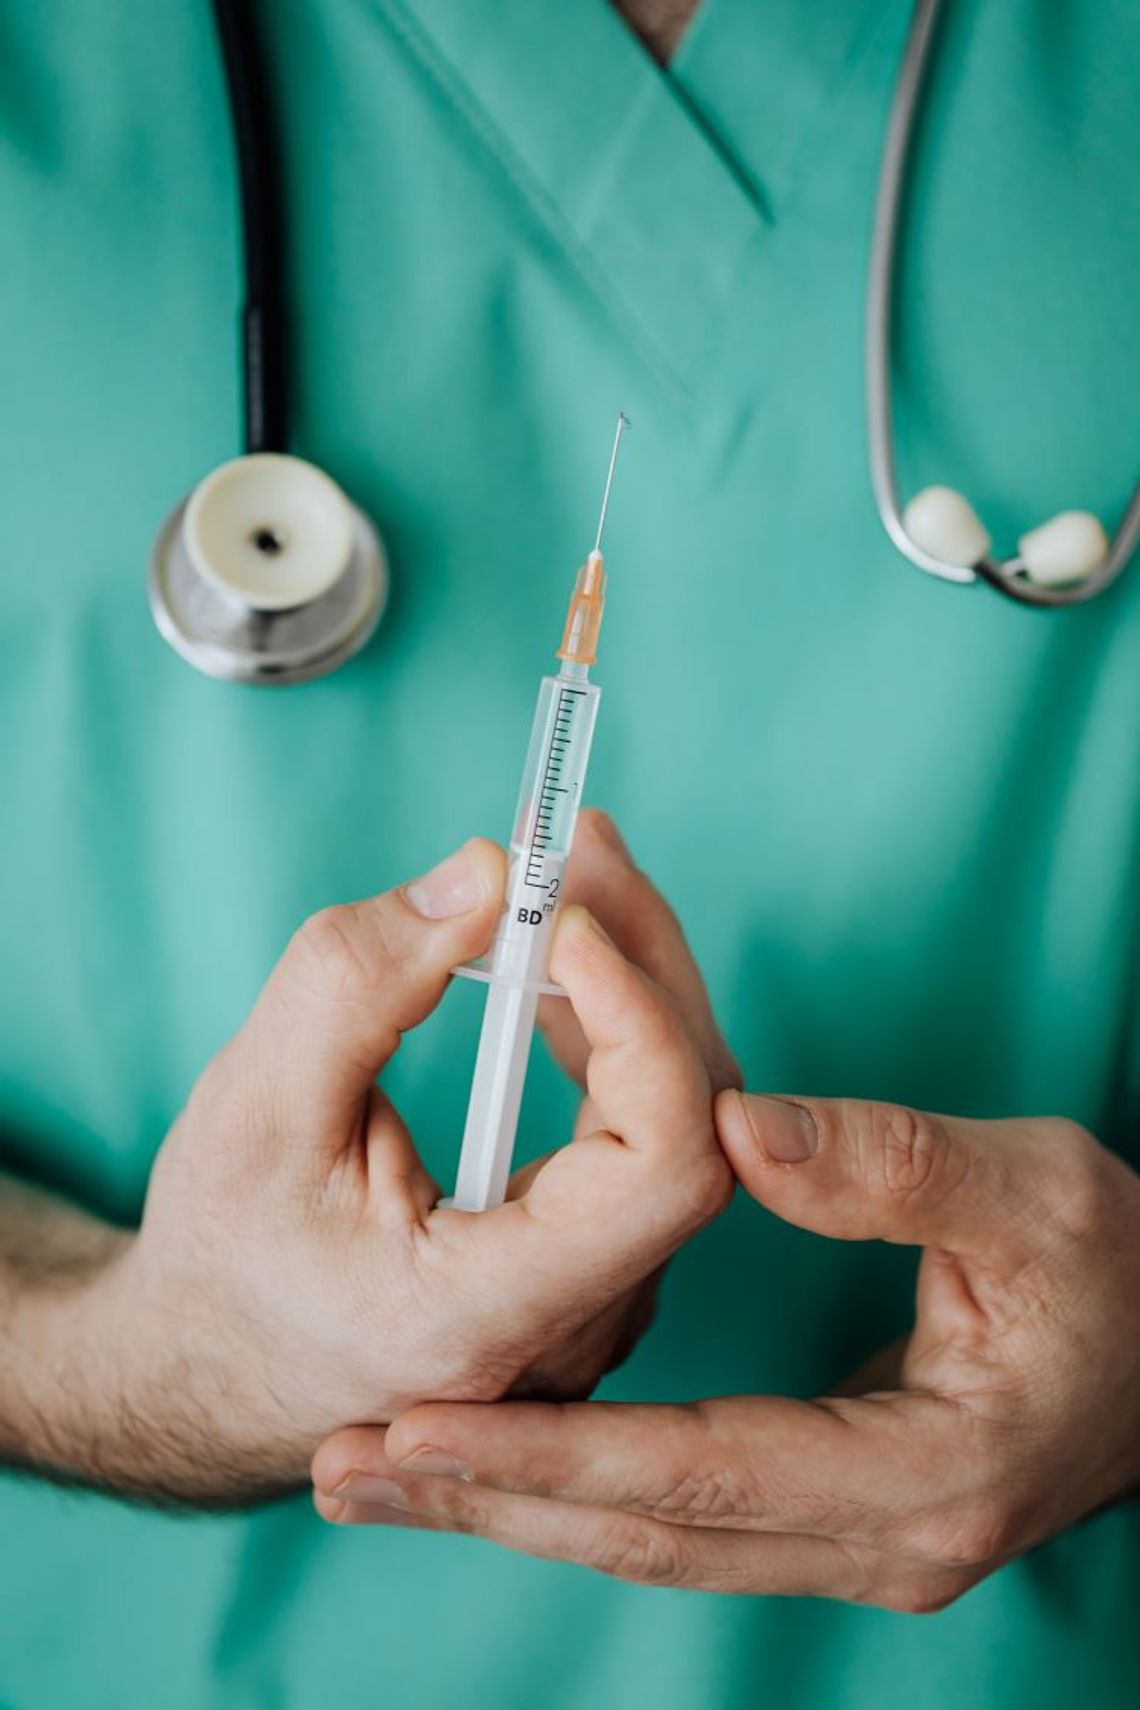 "Nikt nie może być poddany eksperymentom naukowym, w tym medycznym, bez dobrowolnie wyrażonej zgody"- radny z Ciechocinka interpeluje w sprawie szczepień 